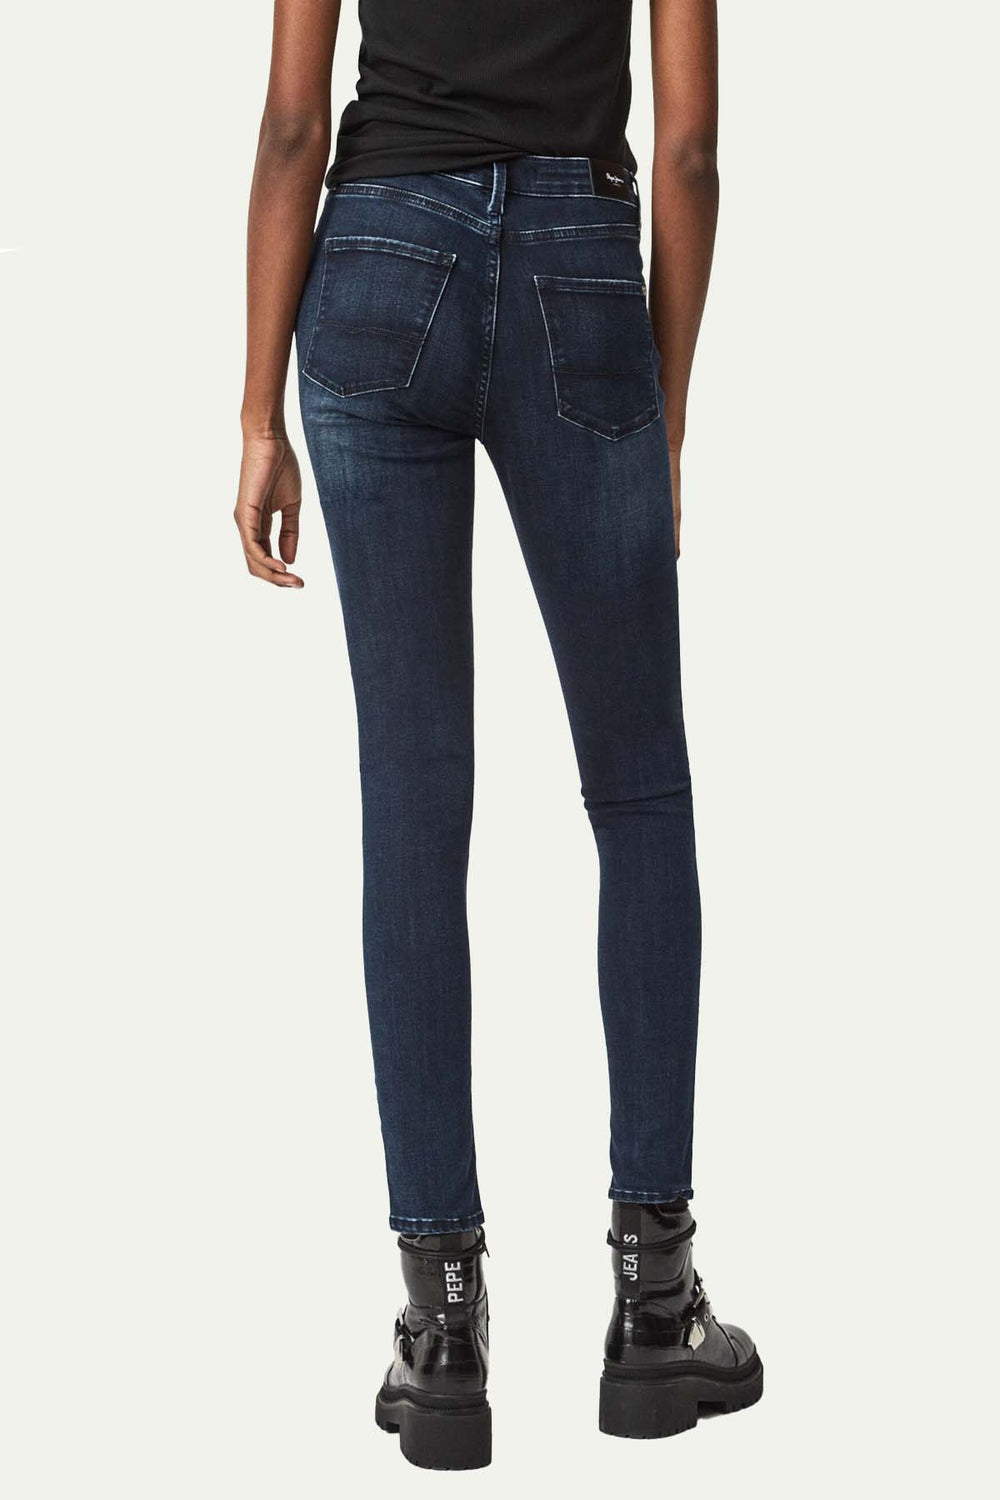 ג'ינס REGENT - Pepe Jeans